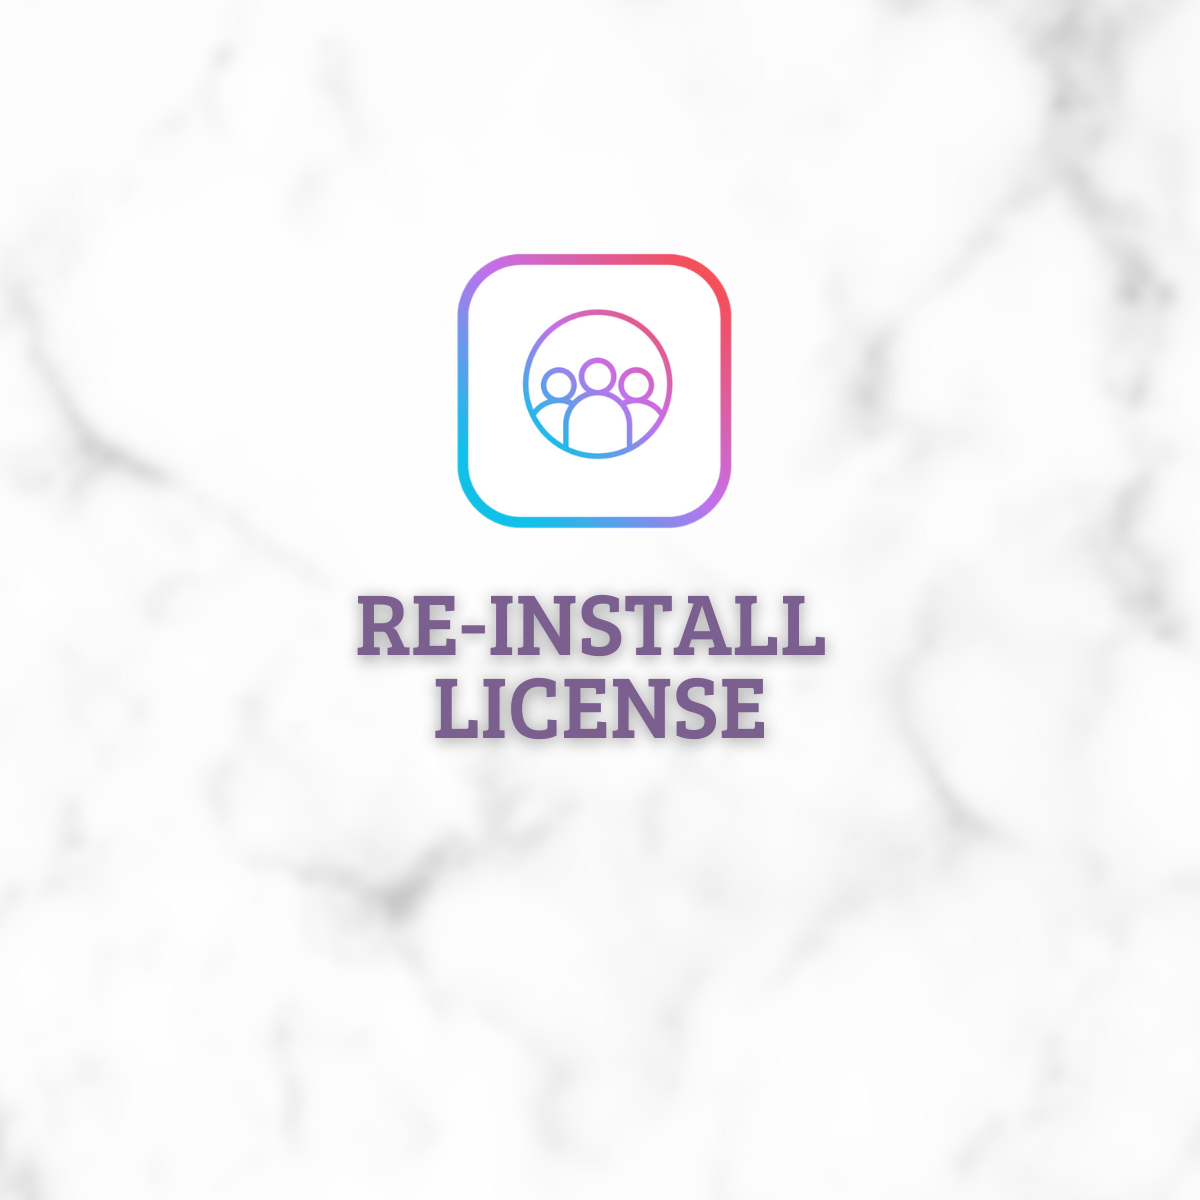 Reinstall License